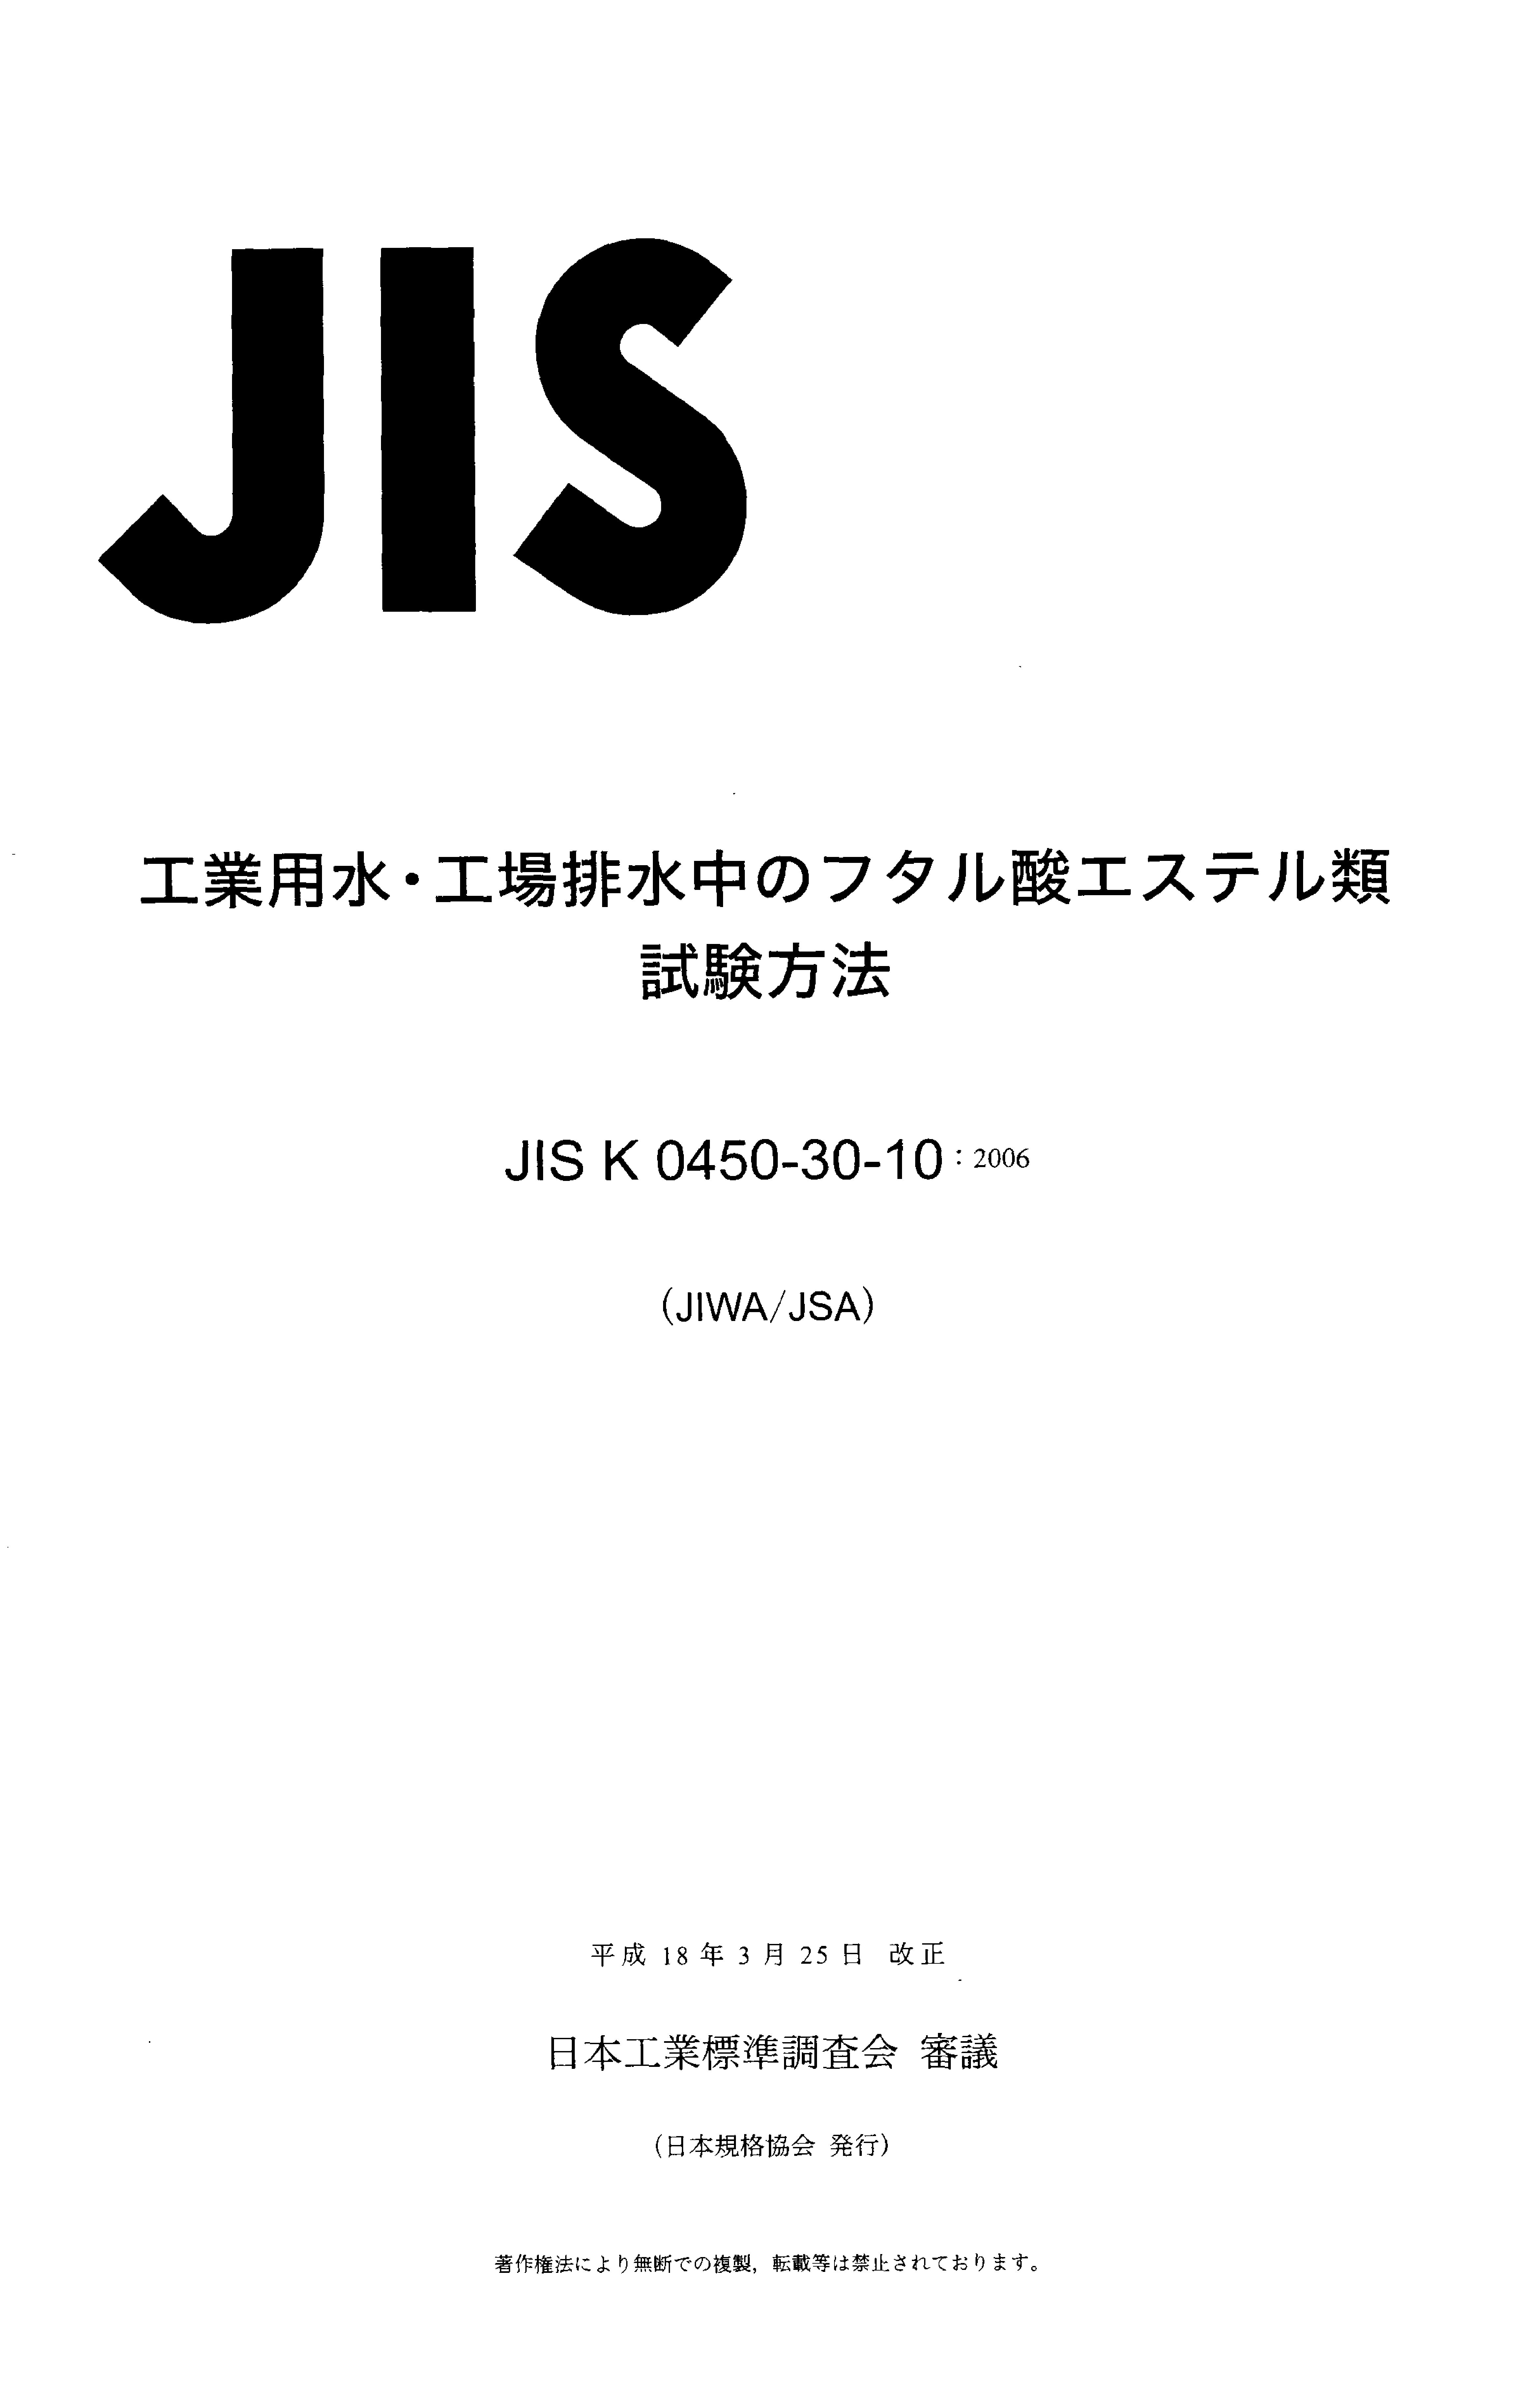 JIS K 0450-30-10:2006